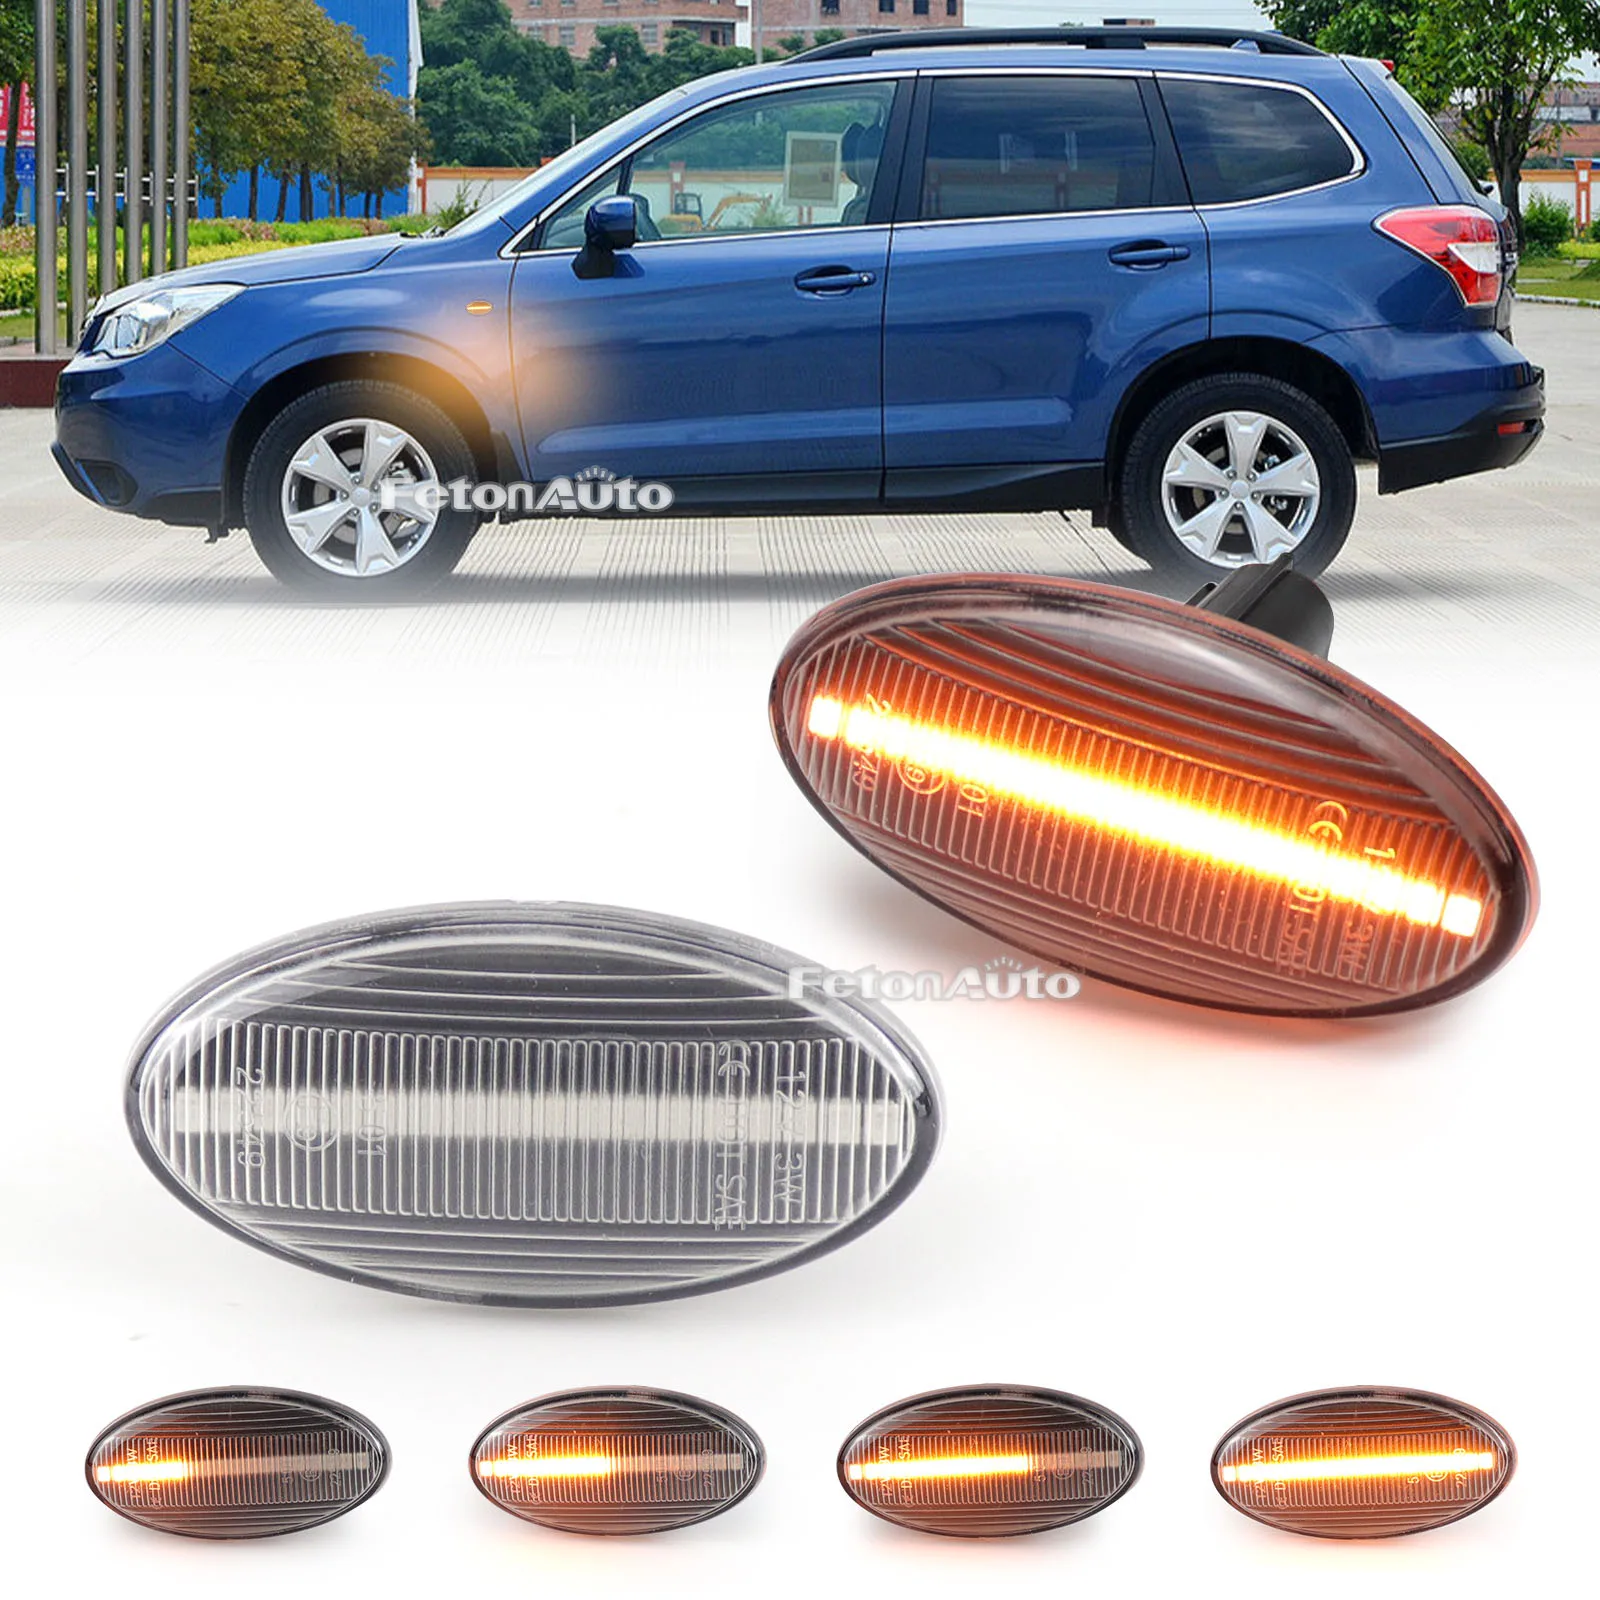 

Динамические боковые габаритные огни, дневной свет, мигающий сигнал поворота для Subaru Forester Impreza 2008 2009 2010 2011 2012-2019